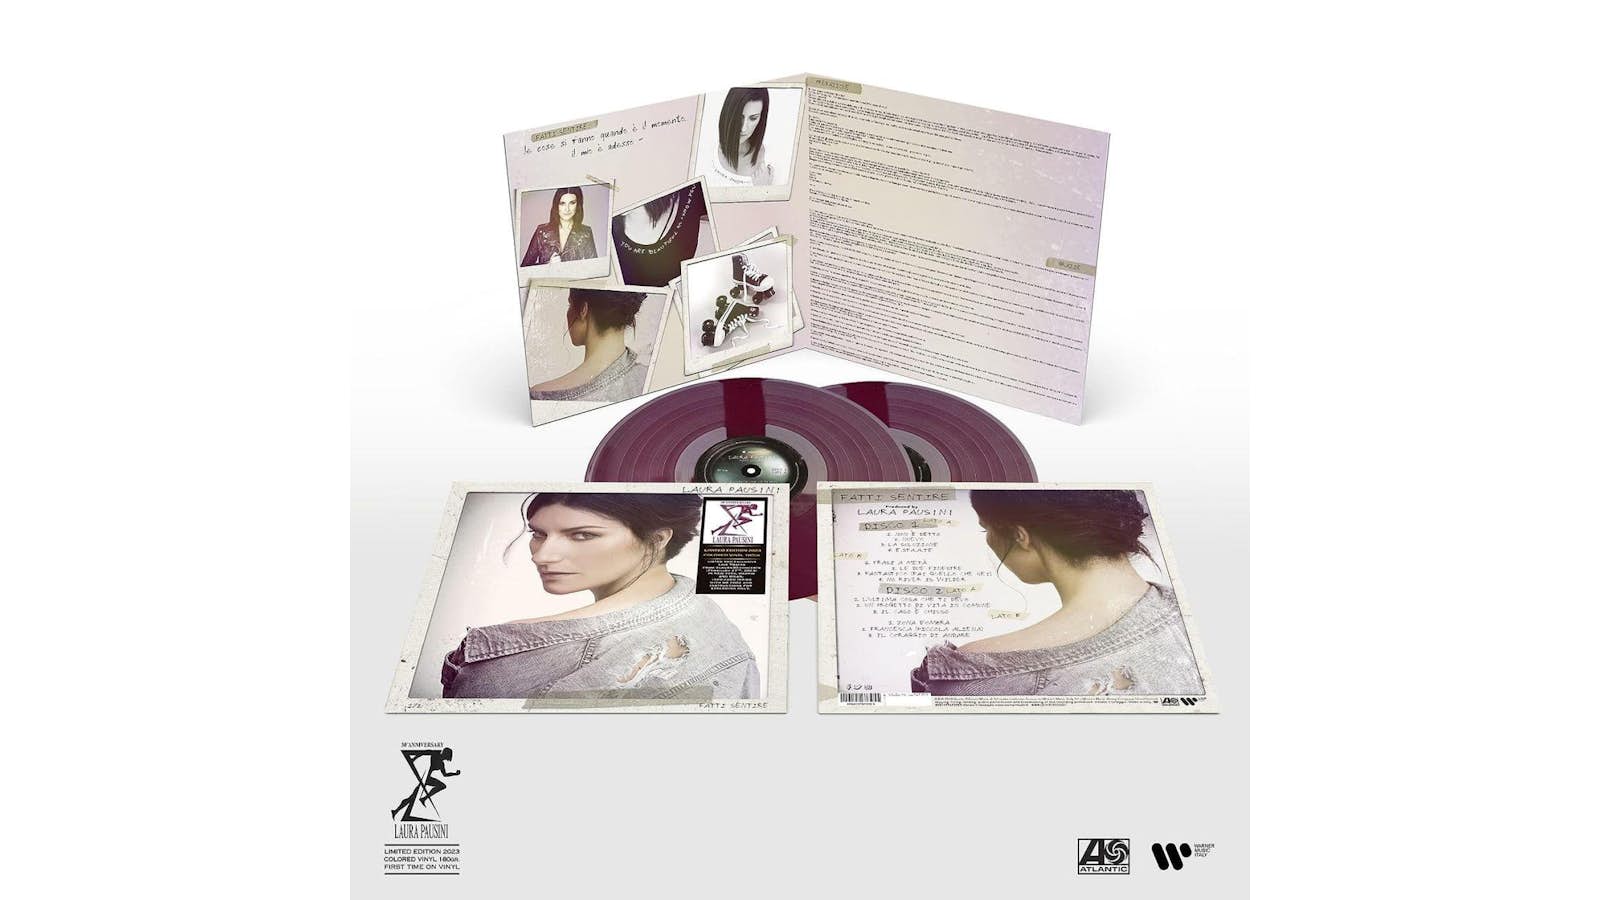 Laura Pausini - From The Inside - Vinyl LP em 2023